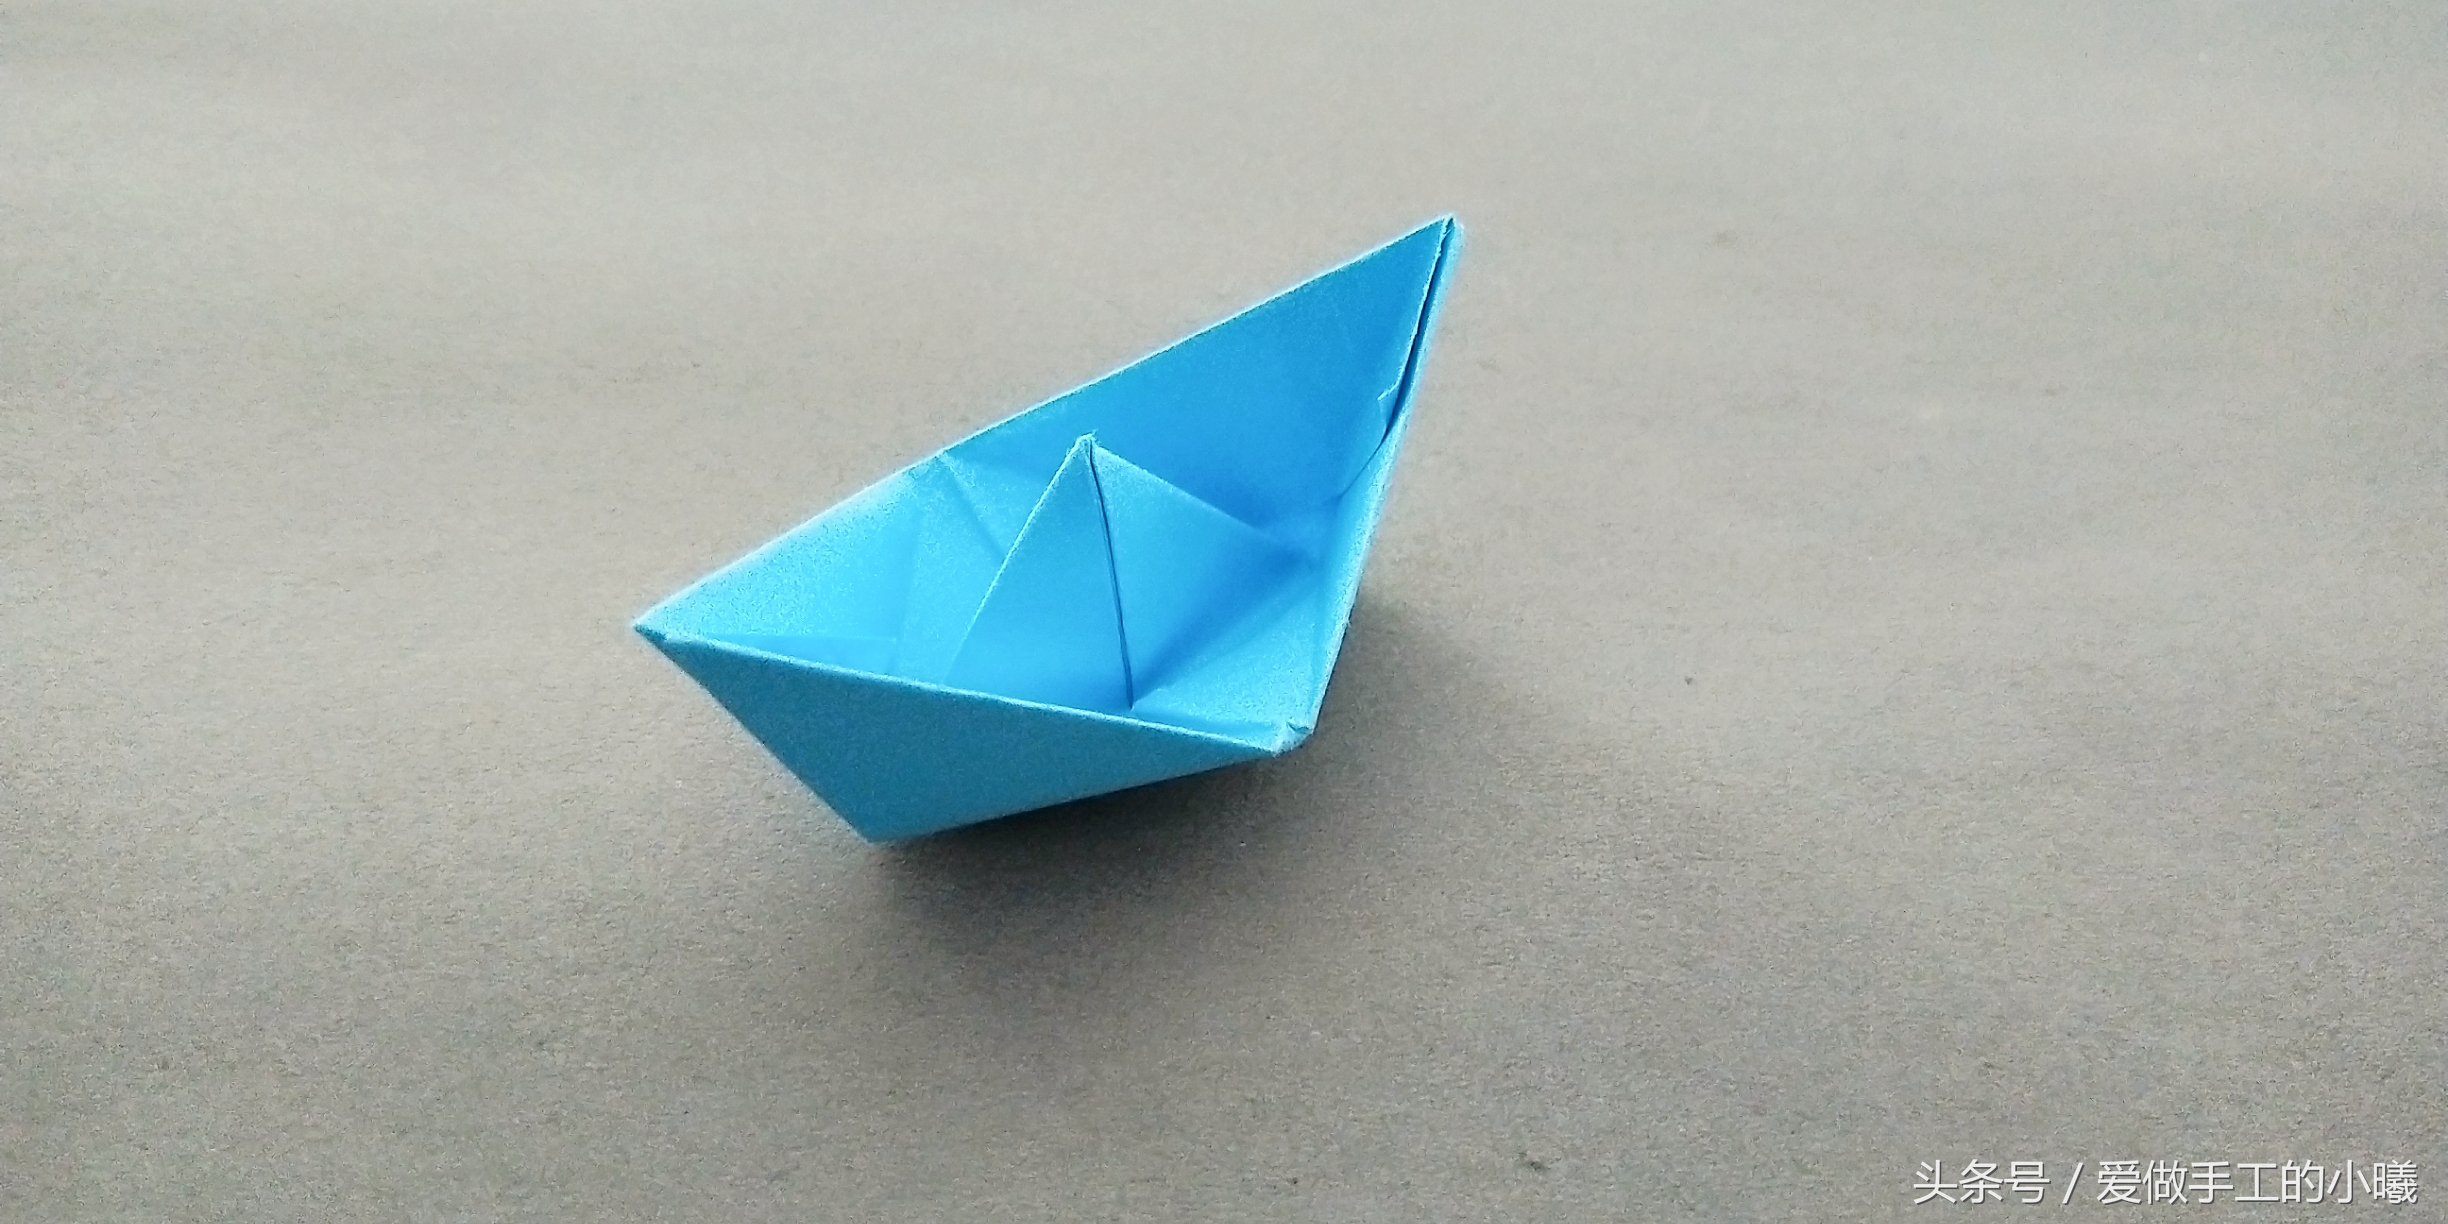 手工船模型制作图纸_万图壁纸网